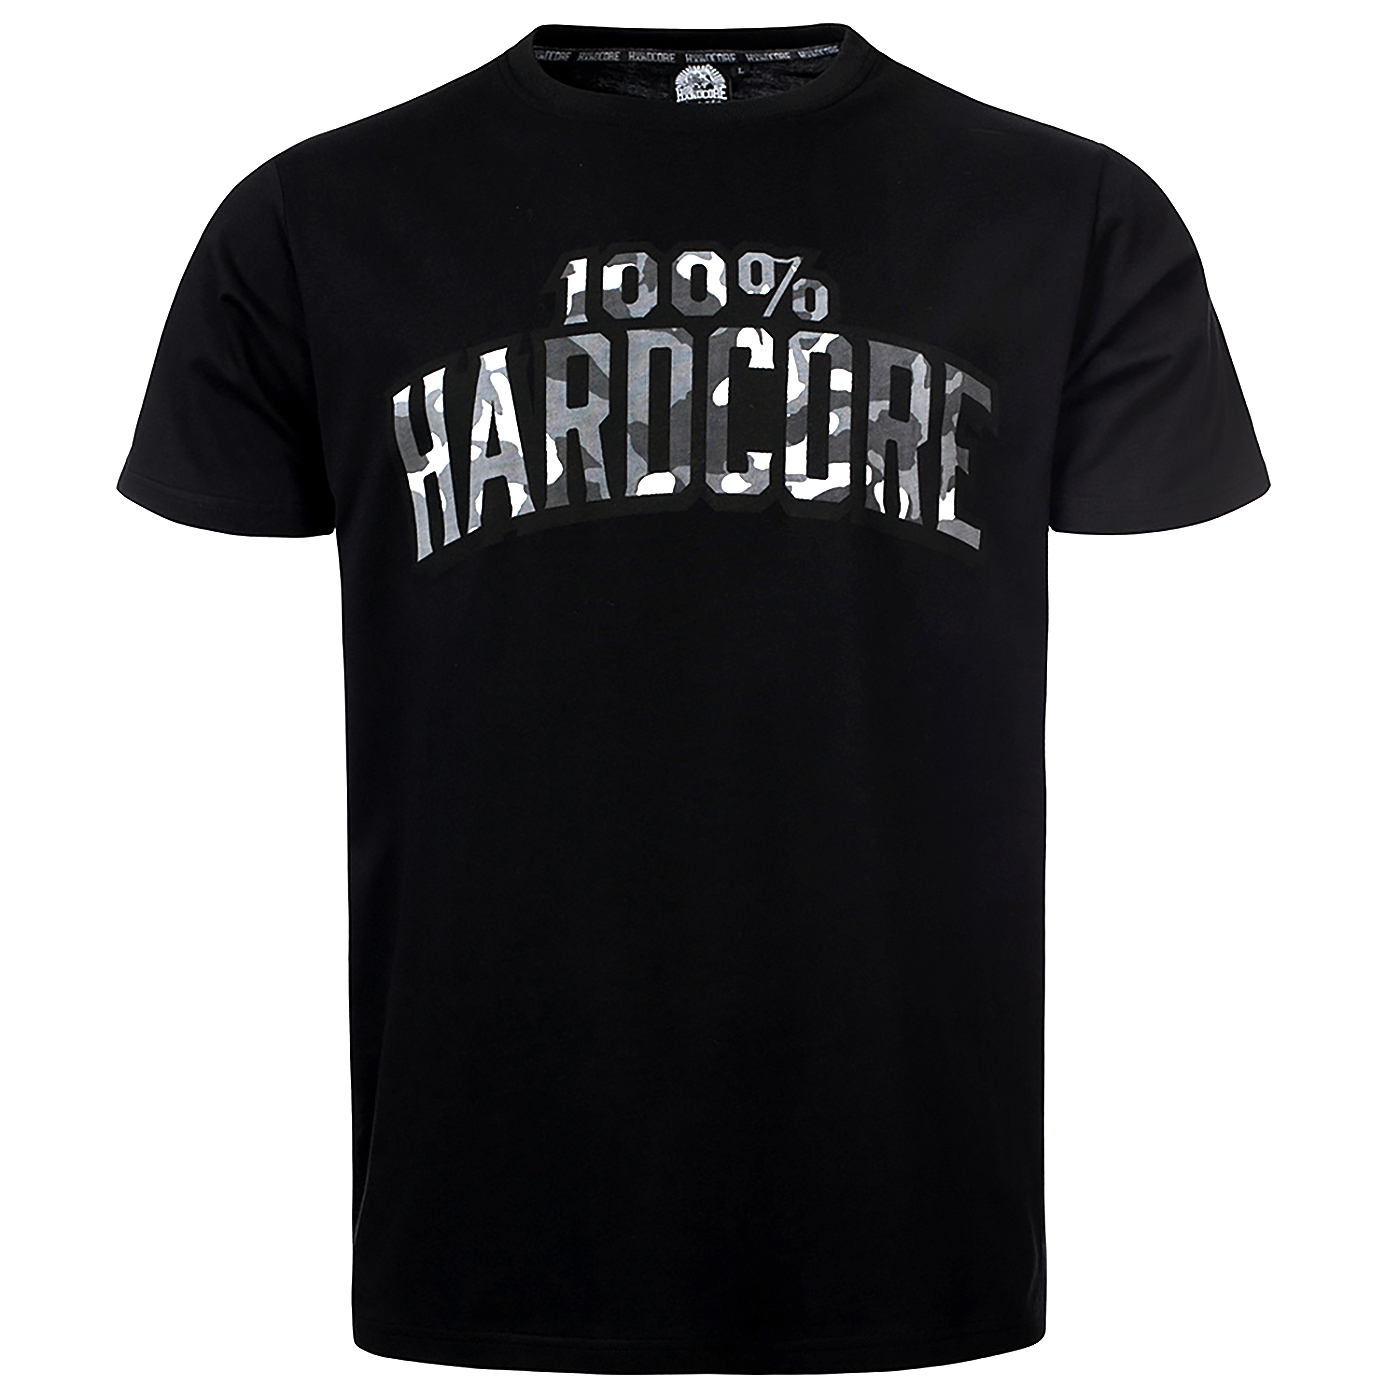 100% Hardcore T-shirt Camouflage (305B05050) Shortsleeve - Rigeshop